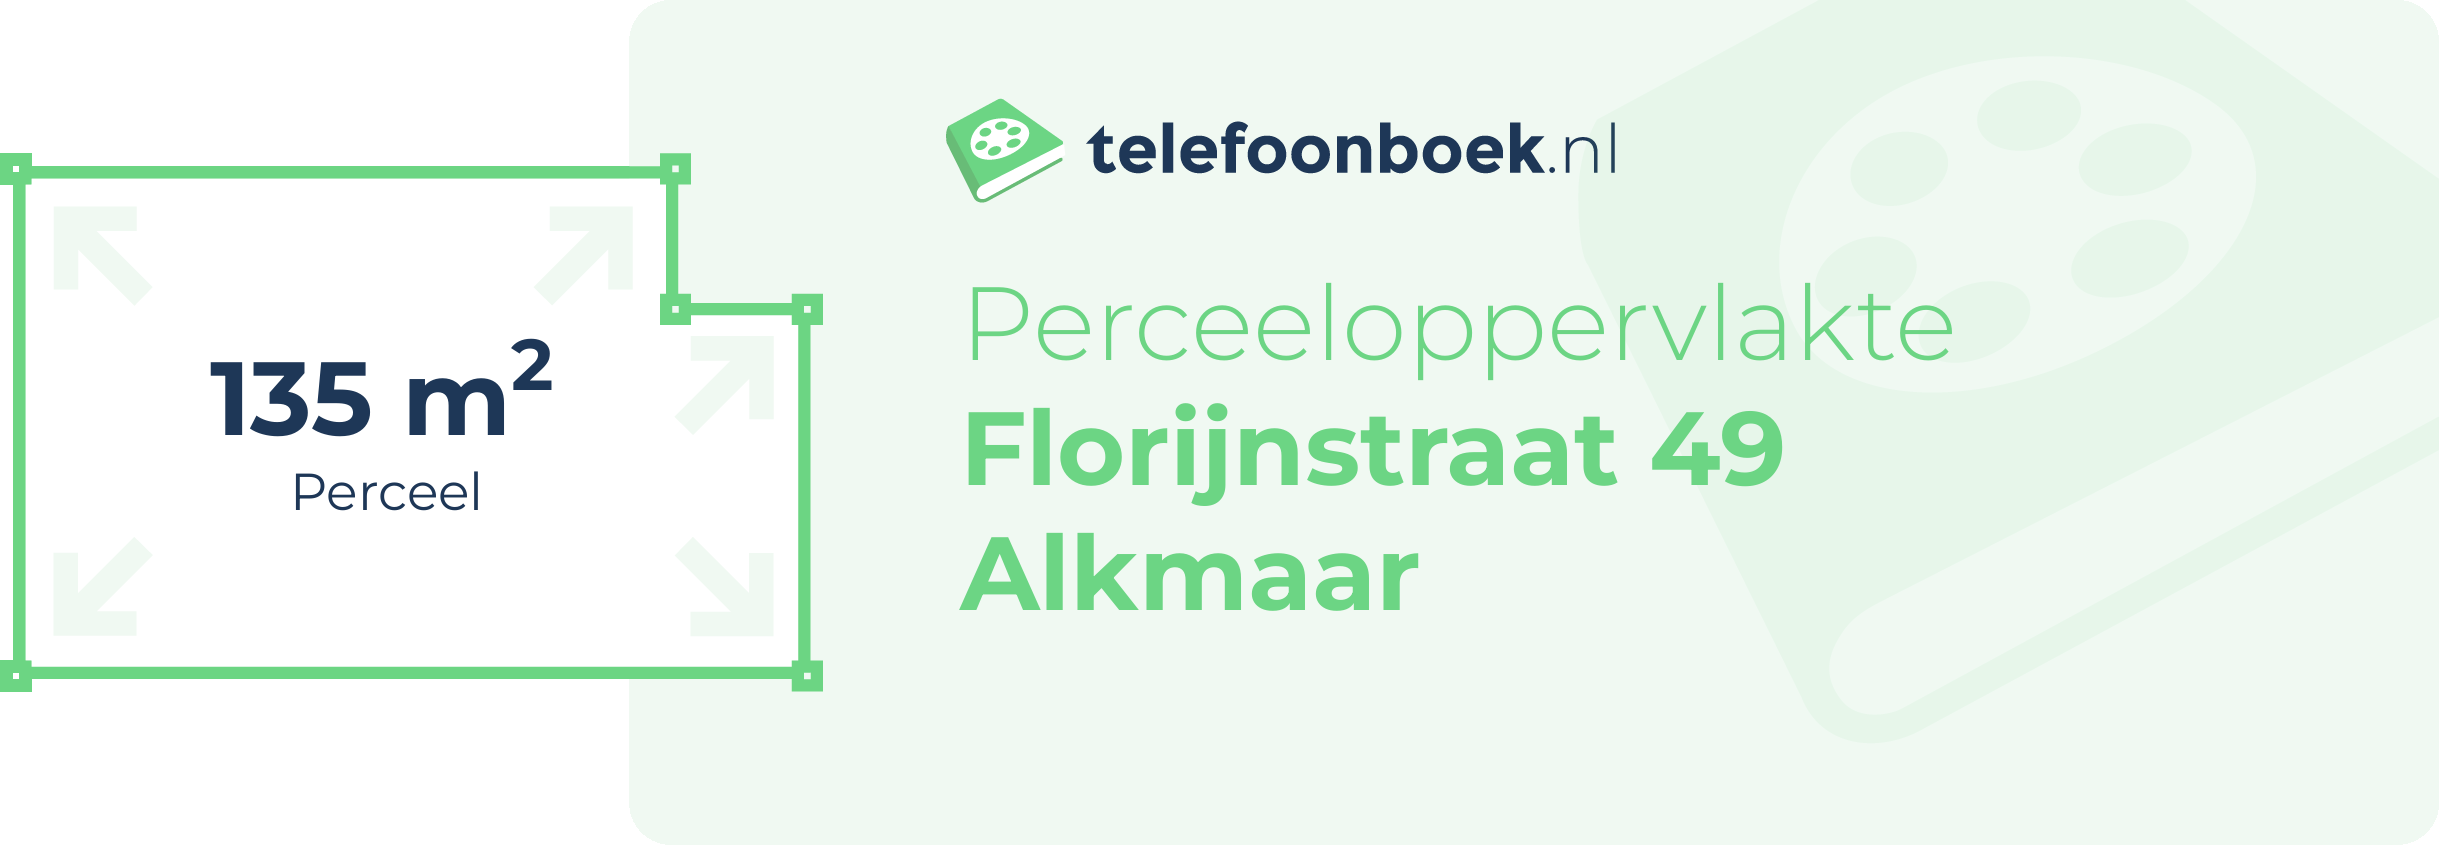 Perceeloppervlakte Florijnstraat 49 Alkmaar